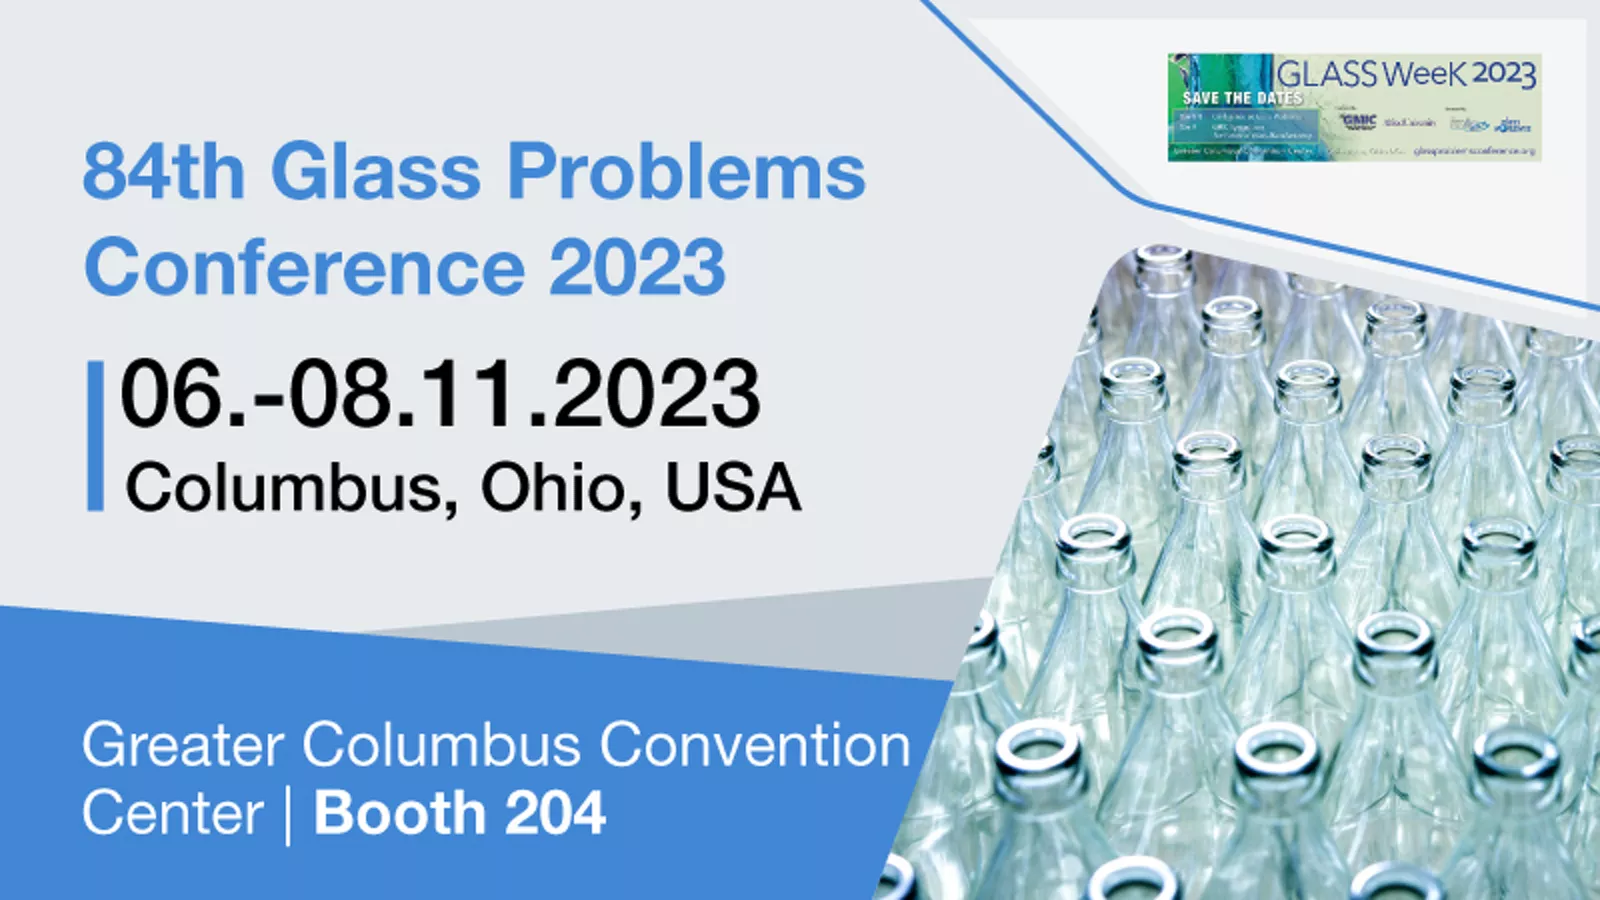 Plansee à conférence sur les problématiques du verre 2023 dans l’Ohio